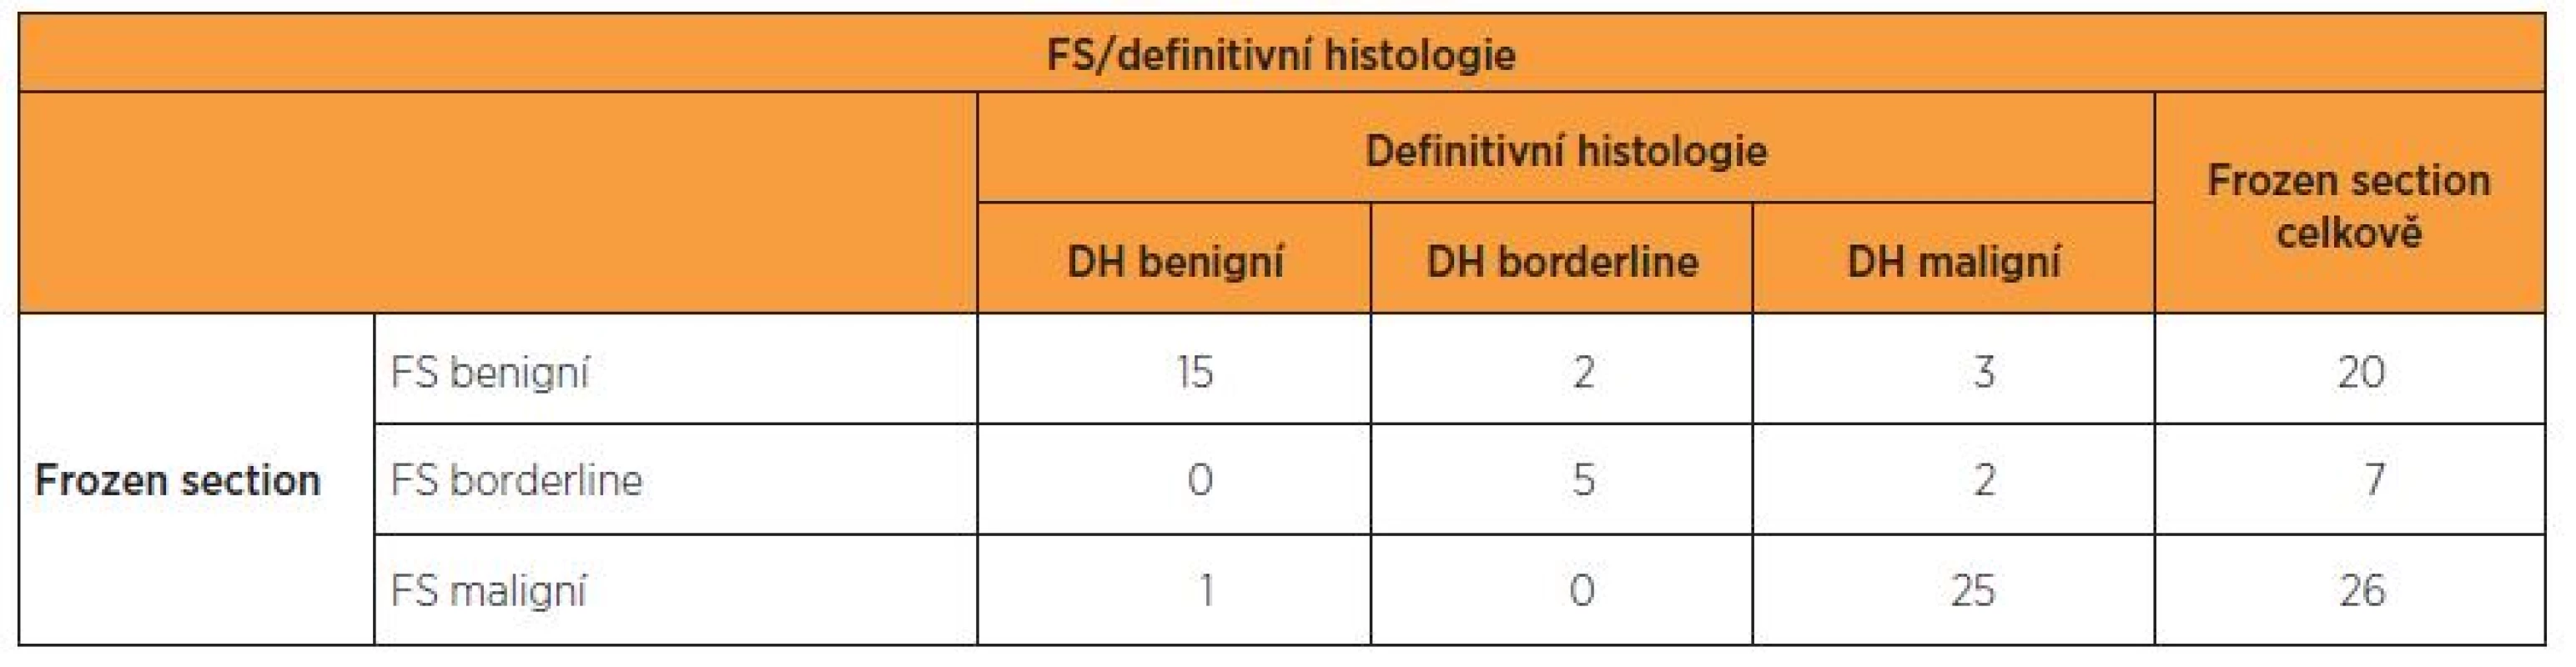 Výsledky FS a definitivní histopatologie v celém souboru 53 nemocných